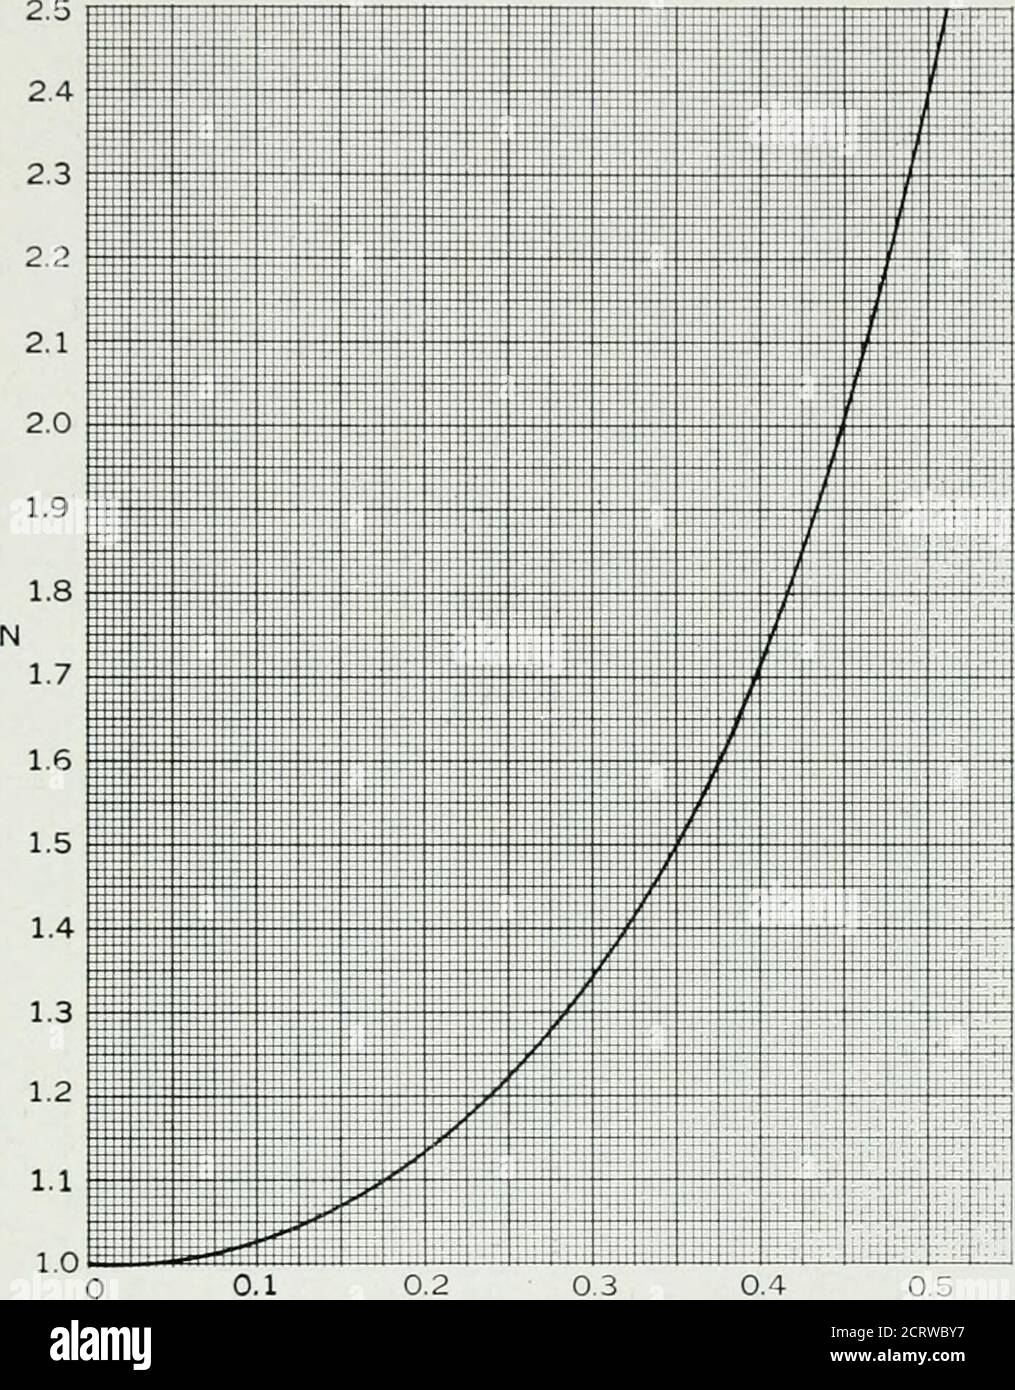 . Le journal technique de Bell System . 0.1 0.2 0.3 0.4 0.5 0 6 0.7 0.8 0 9 1.0 XO XFig. 1.8.1—courbe de conception de l'ensemble de ressorts de tension. Equation (1.8.1). 2. Entrez, à la ligne 2, la hauteur de chute (JT) en pouces. 3. Inscrivez, à la ligne 3, l'accélération maximale admissible (G,„) en unitsde nombre de fois la gravité, qui doit être déterminée avant la main à partir des essais sur l'article à emballer. 4. Entrez, sur la ligne 4, la cote 0:0 (pouces). DYNAMIQUE DE L'AMORTI 377 5. Entrez, sur la ligne 5, la cote / (pouces). Pour qu'un paquet ait la même fréquence de ressort dans toutes les directions, ( = XO/2 est un con- Banque D'Images